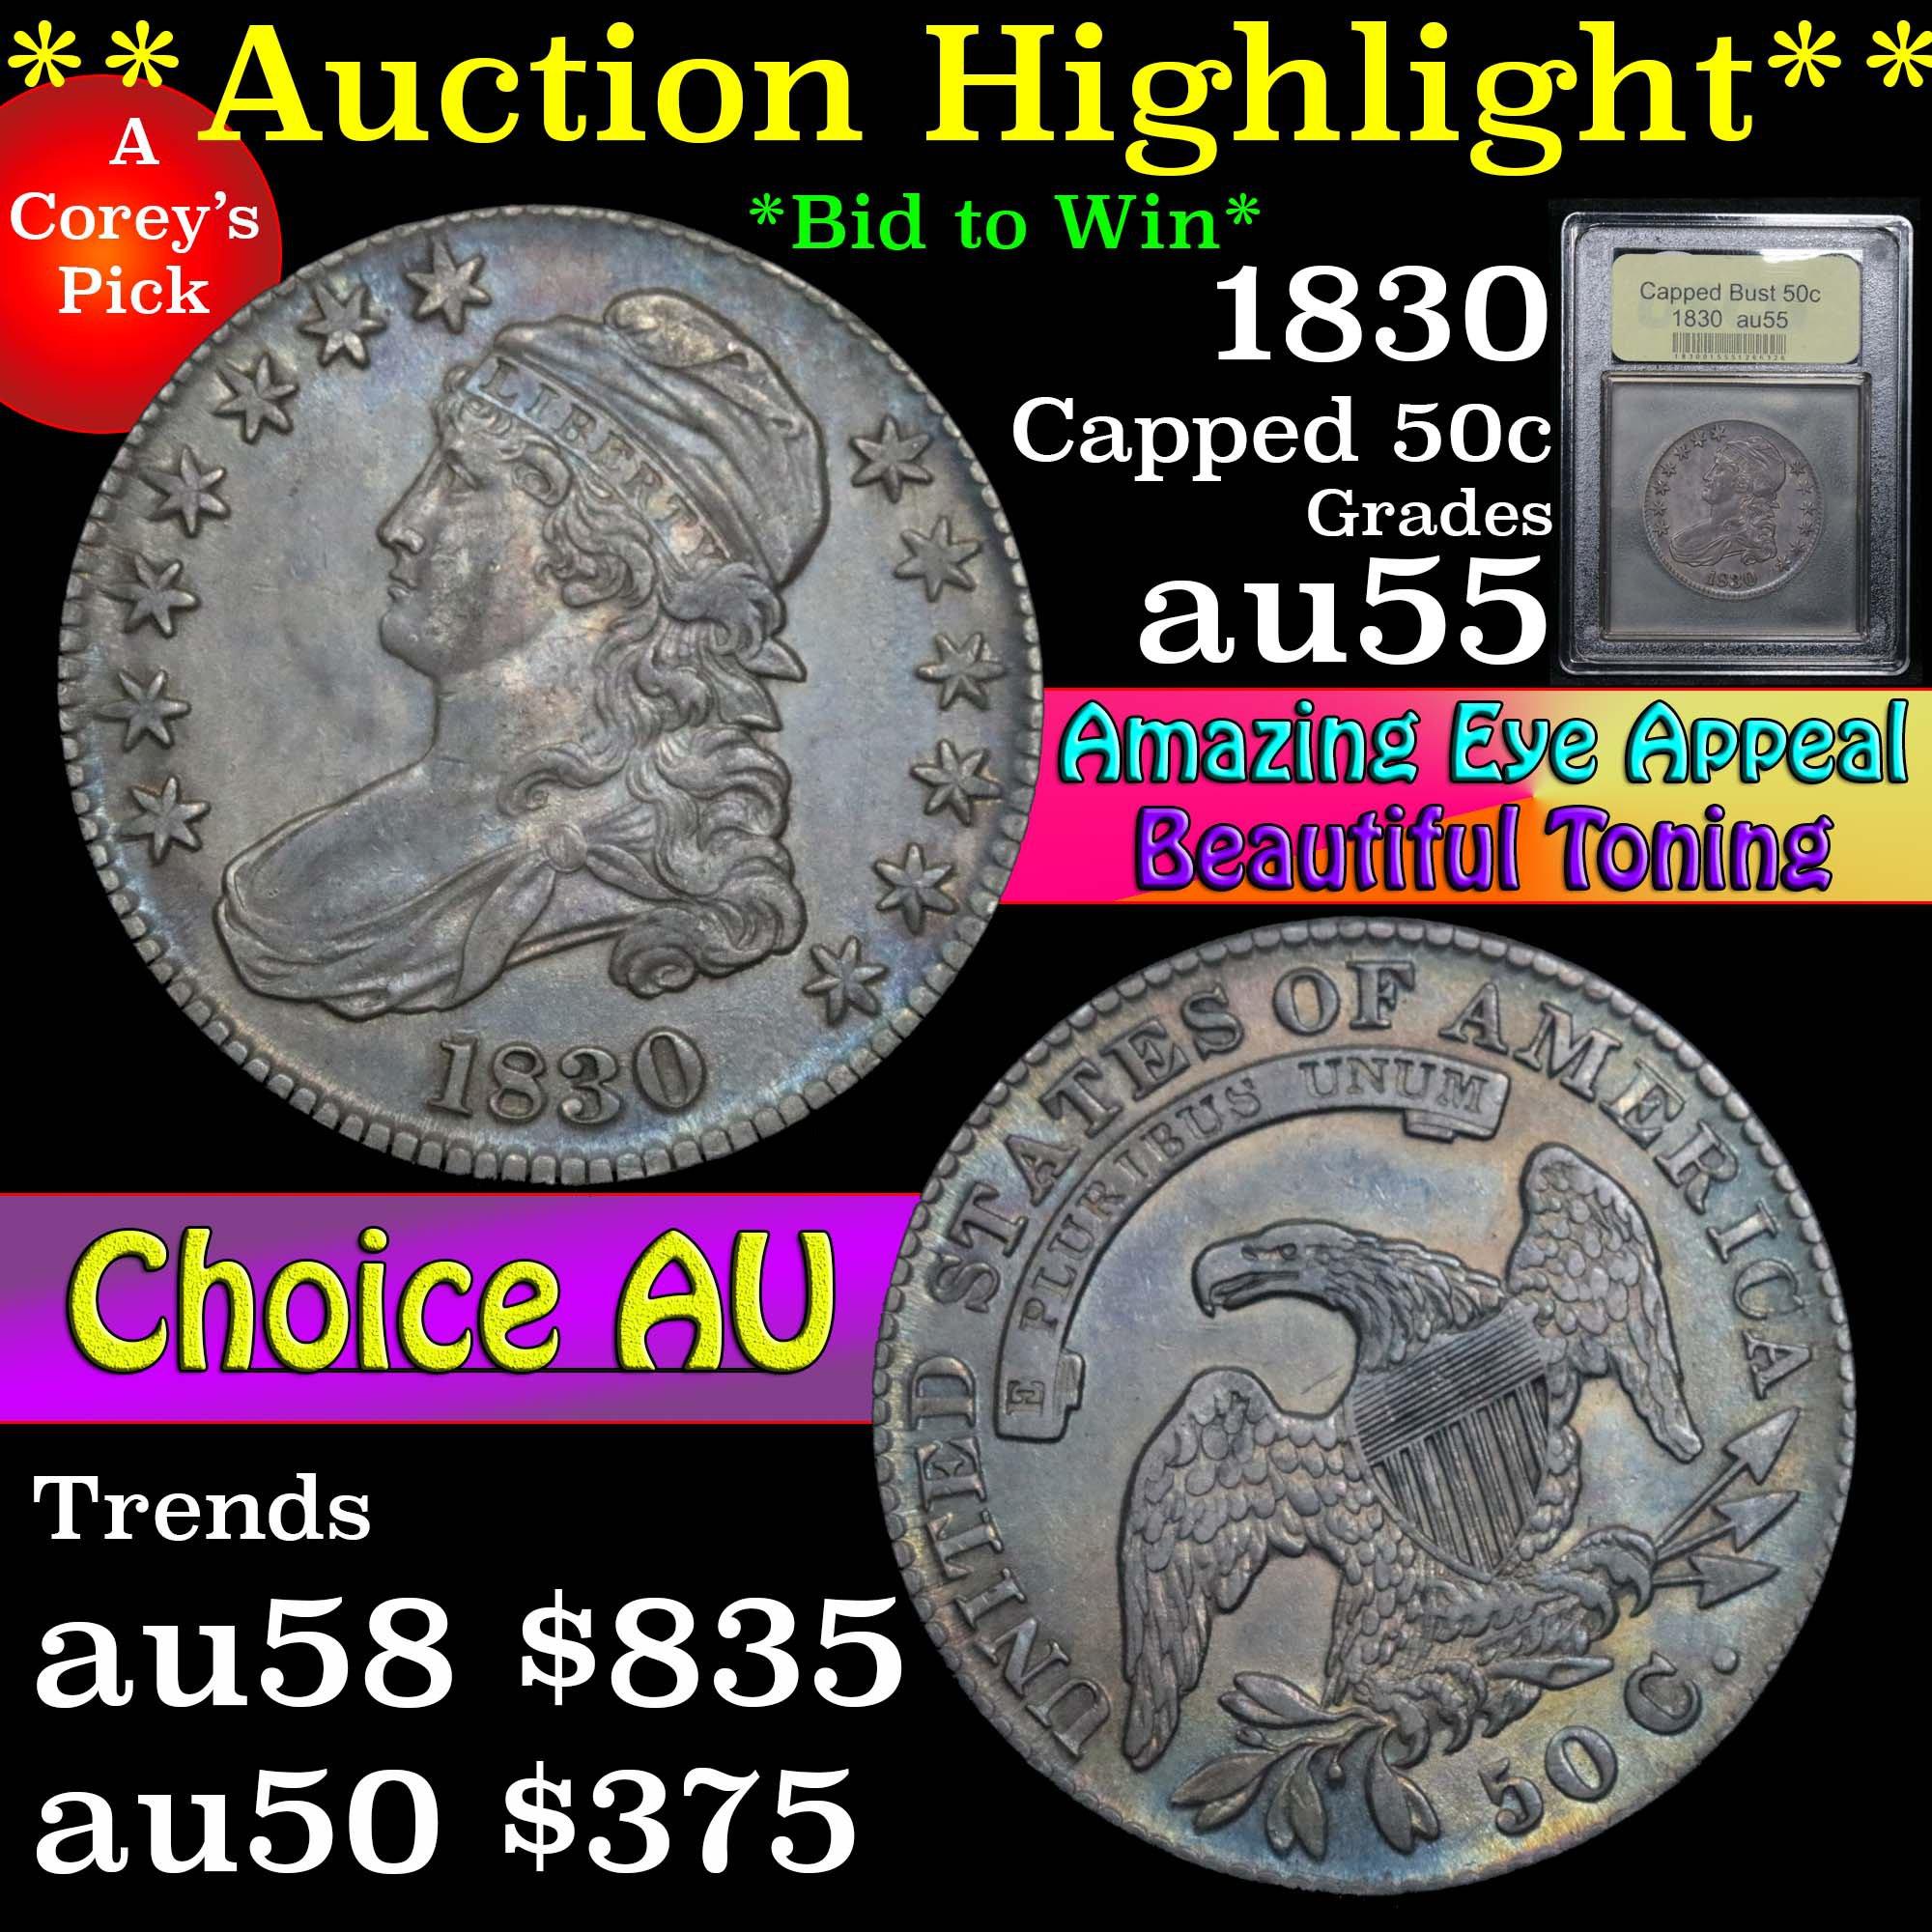 ***Auction Highlight*** 1830 Capped Bust Half Dollar 50c Graded Choice AU by USCG (fc)